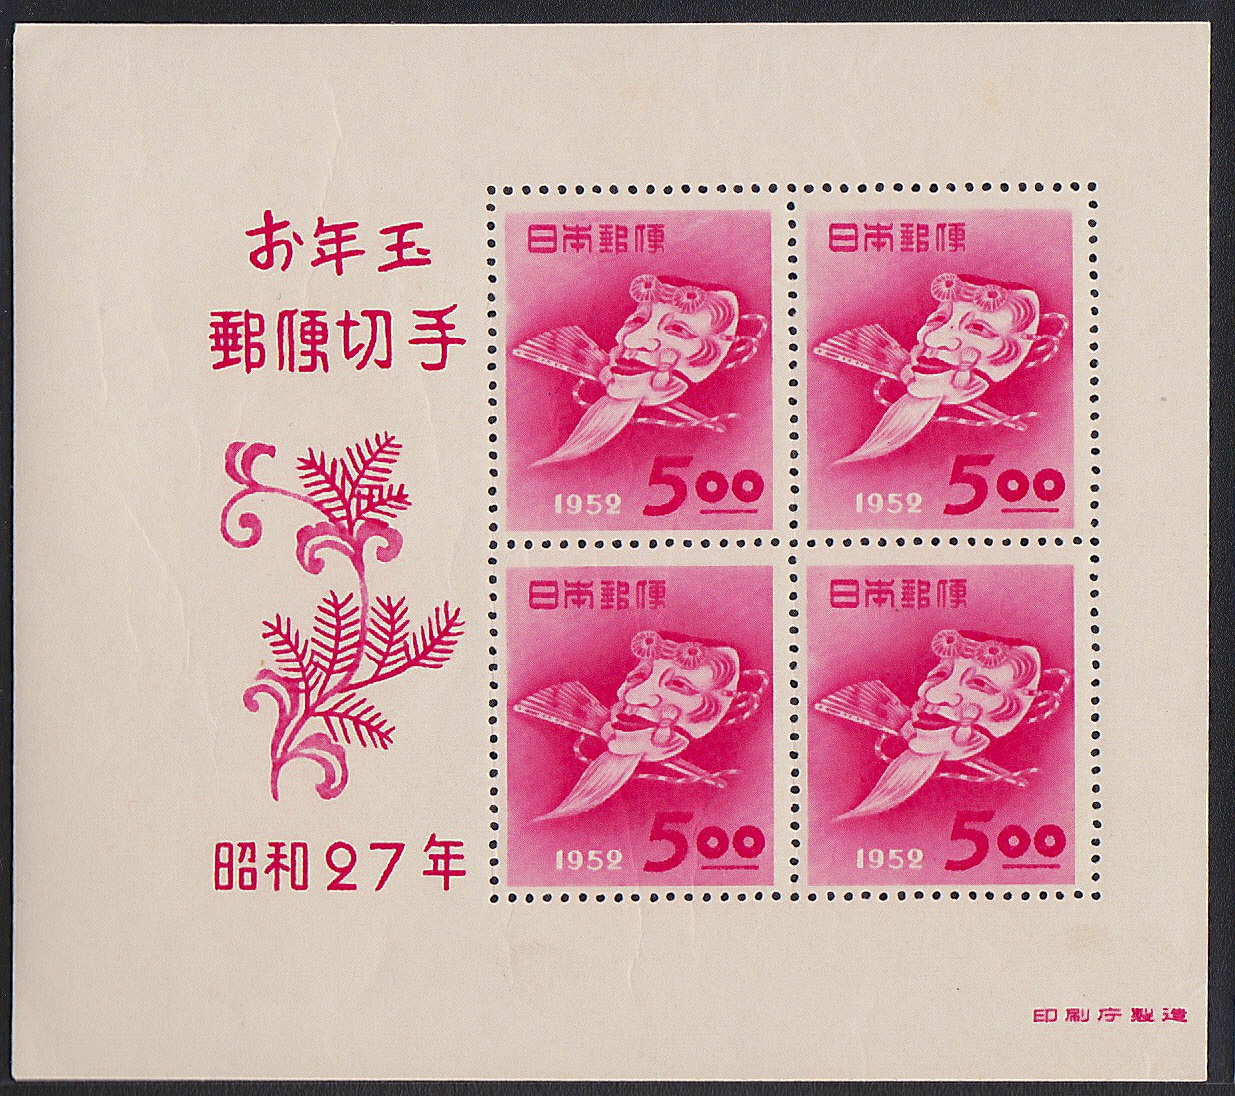 年賀　昭和27年御年玉郵便切手　印刷庁製造